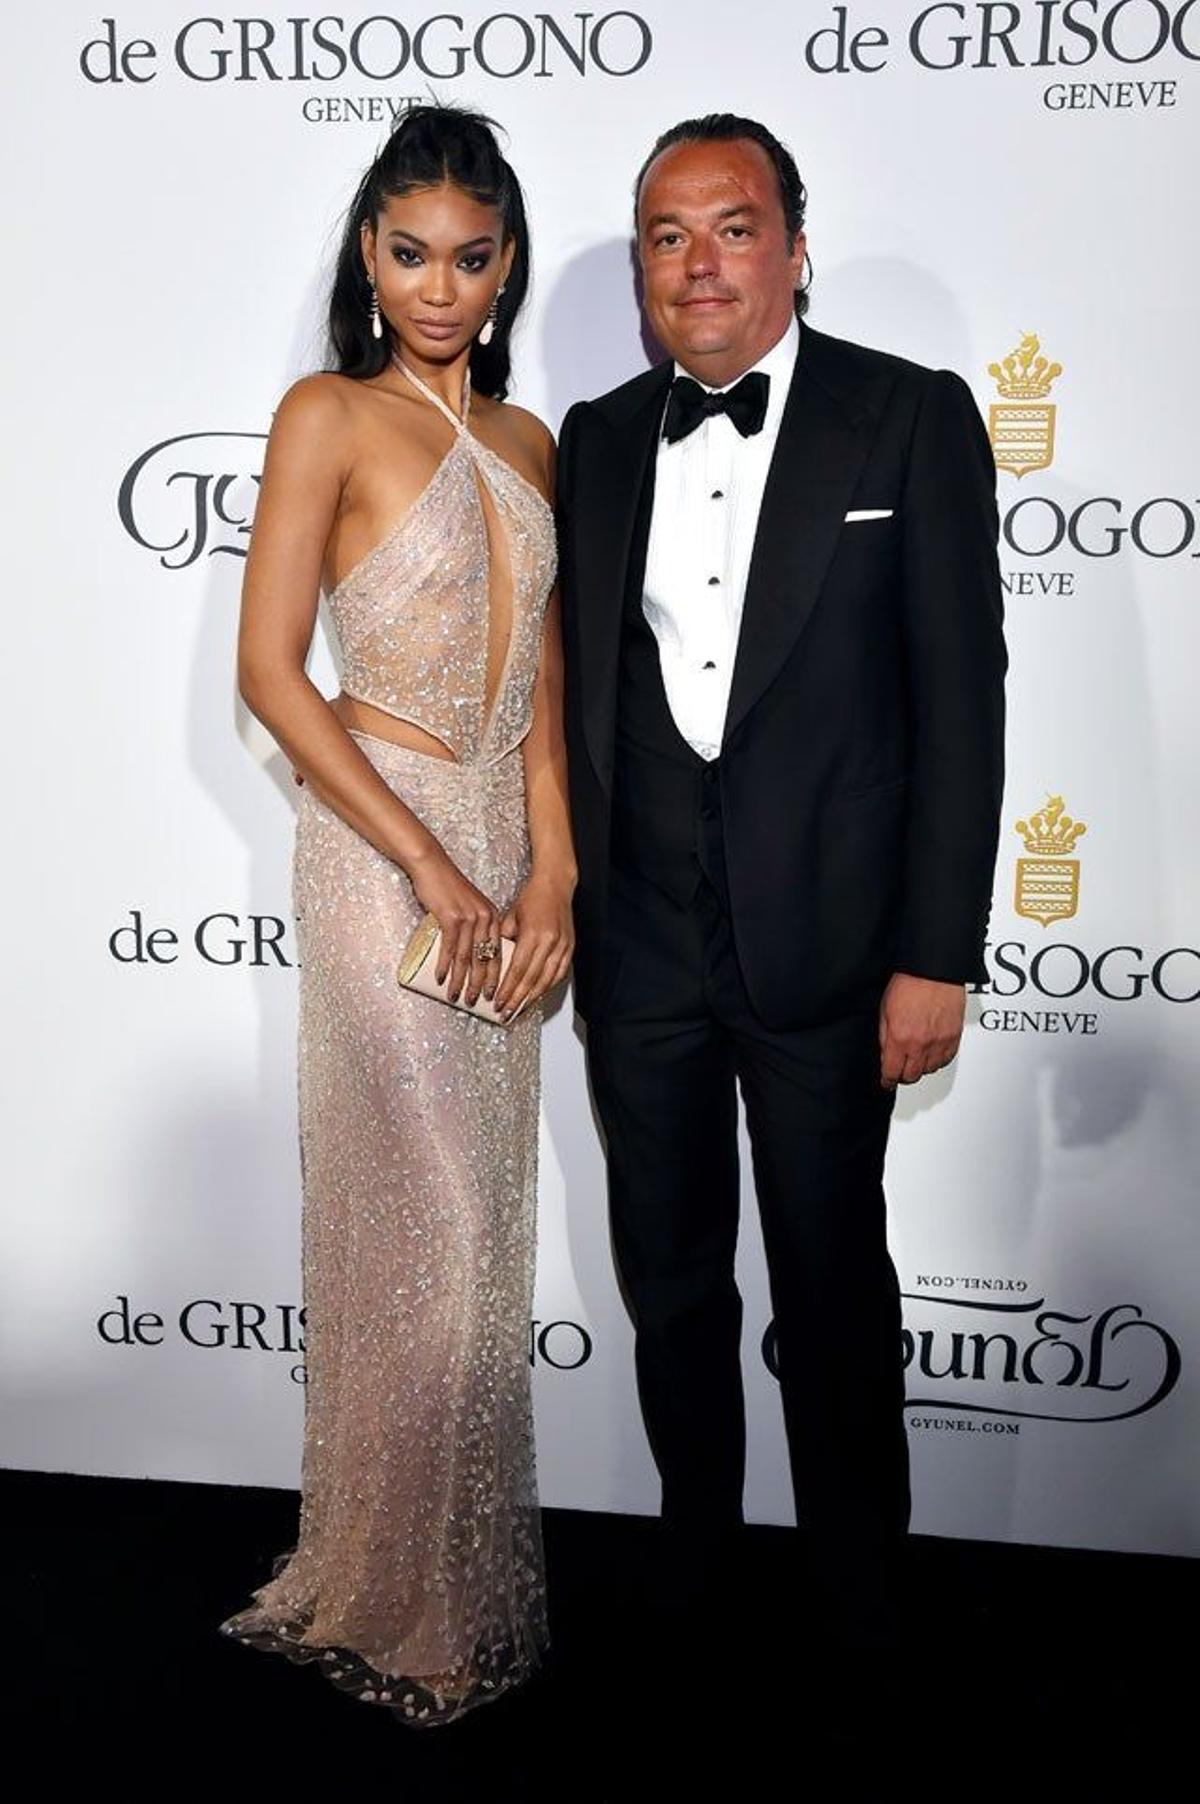 Chanel Iman y Gilles Mansard en la fiesta De Grisogono en Cannes